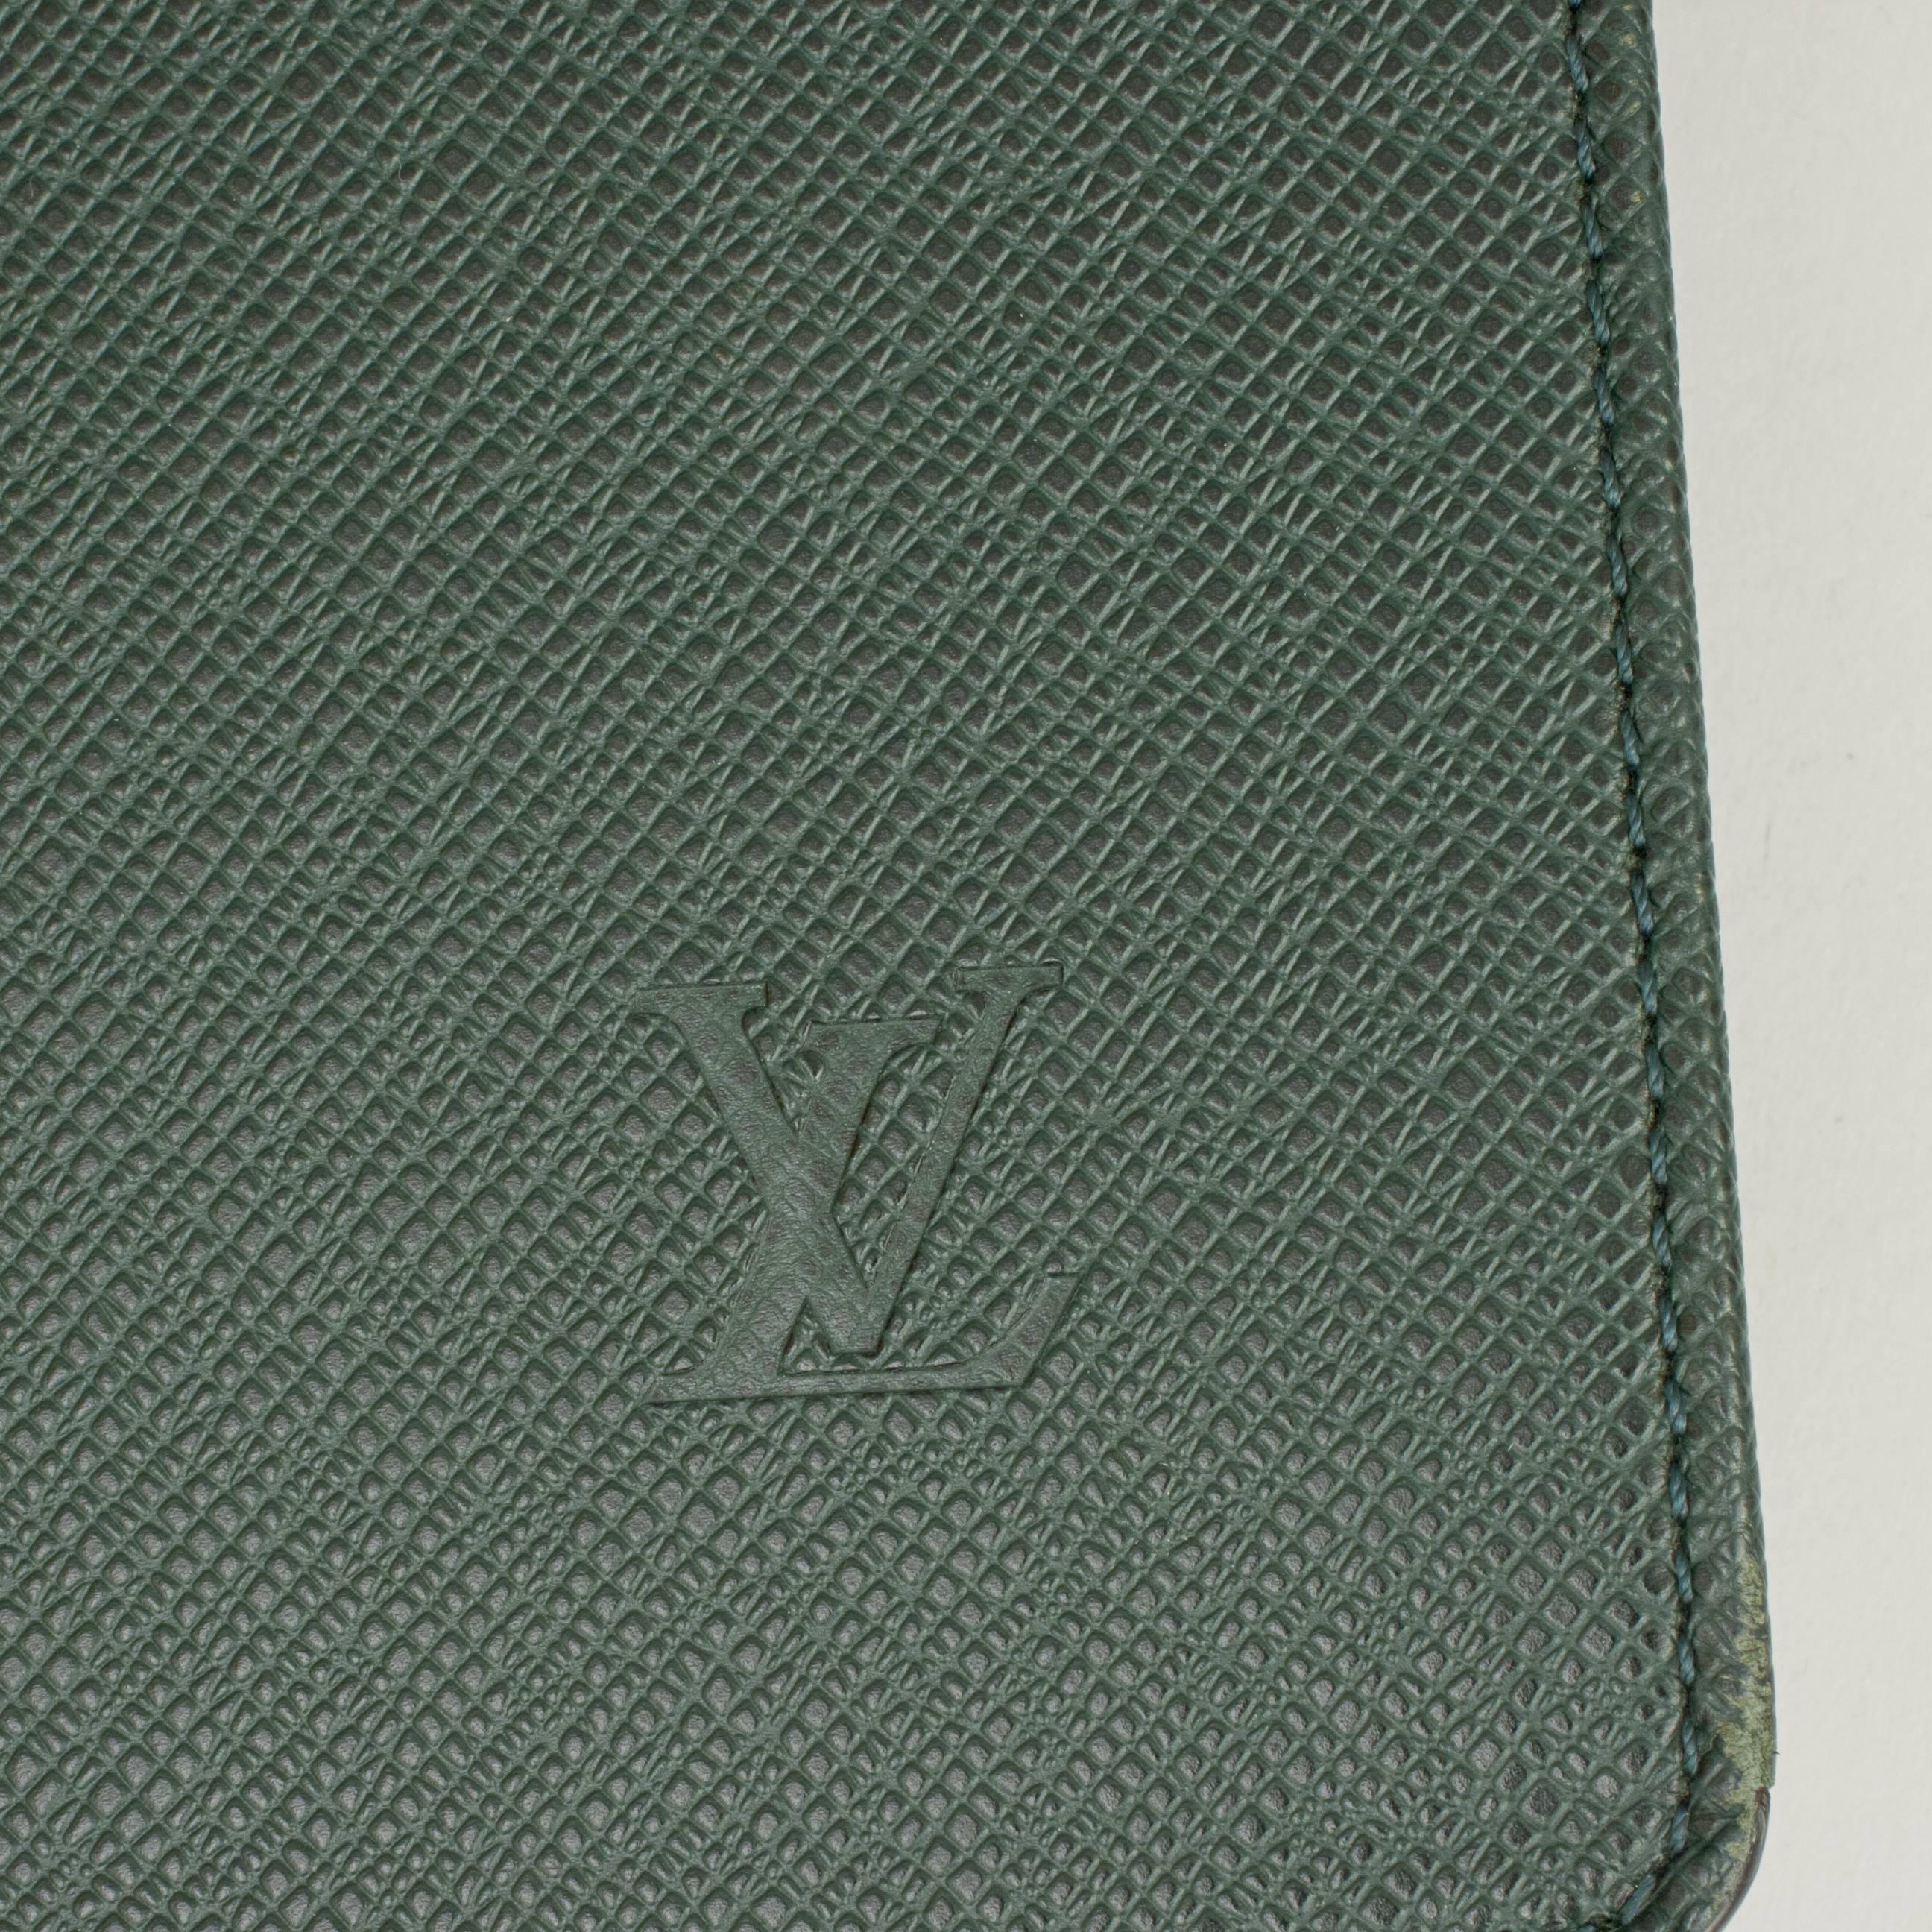 Leather Louis Vuitton Document Case